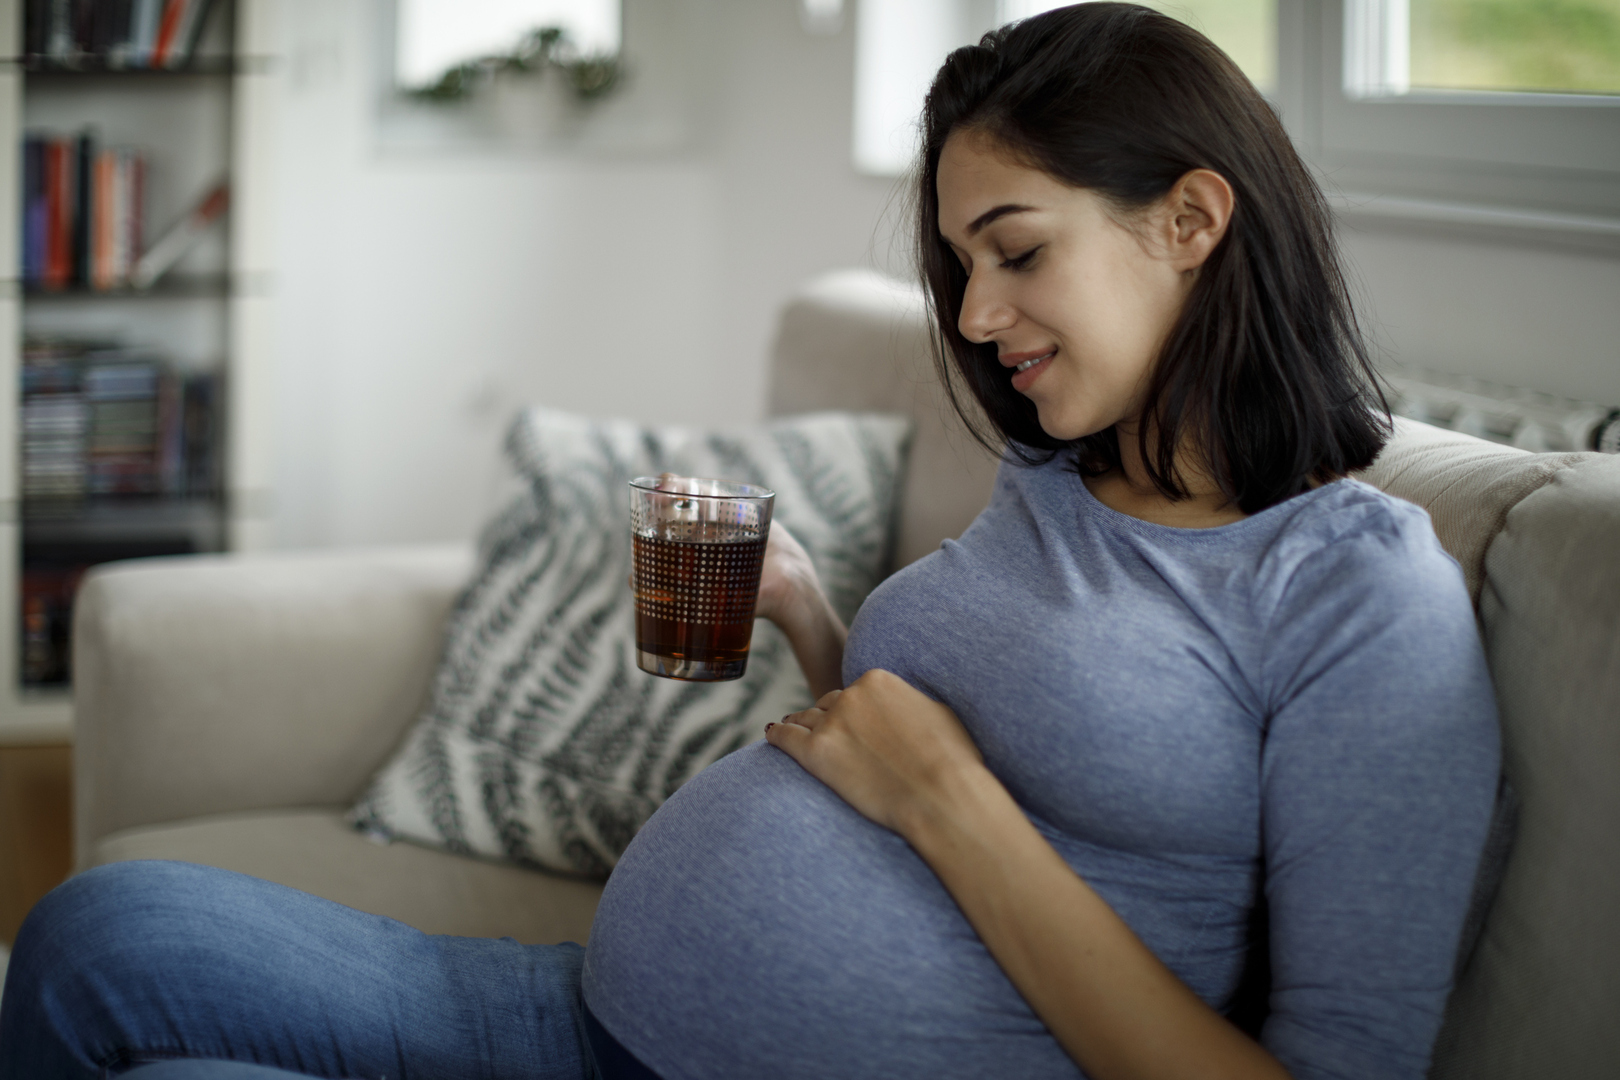 دراسة: شرب القهوة أثناء الحمل لا يسبب آثارا سلبية على نتائج الولادة كما كان يُعتقد سابقا